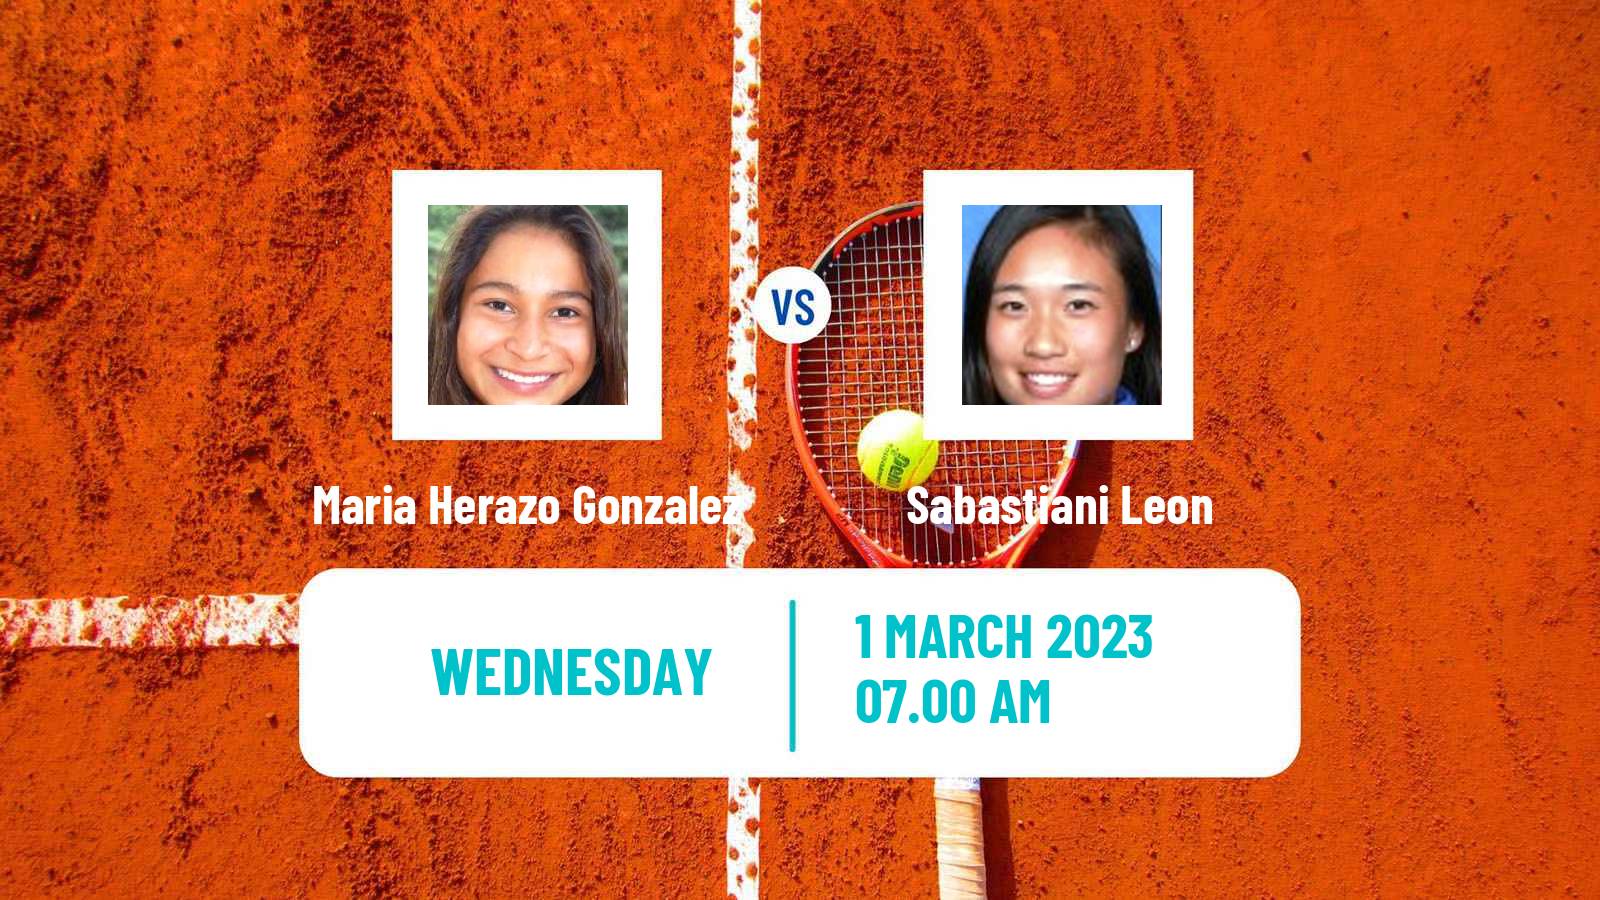 Tennis ITF Tournaments Maria Herazo Gonzalez - Sabastiani Leon